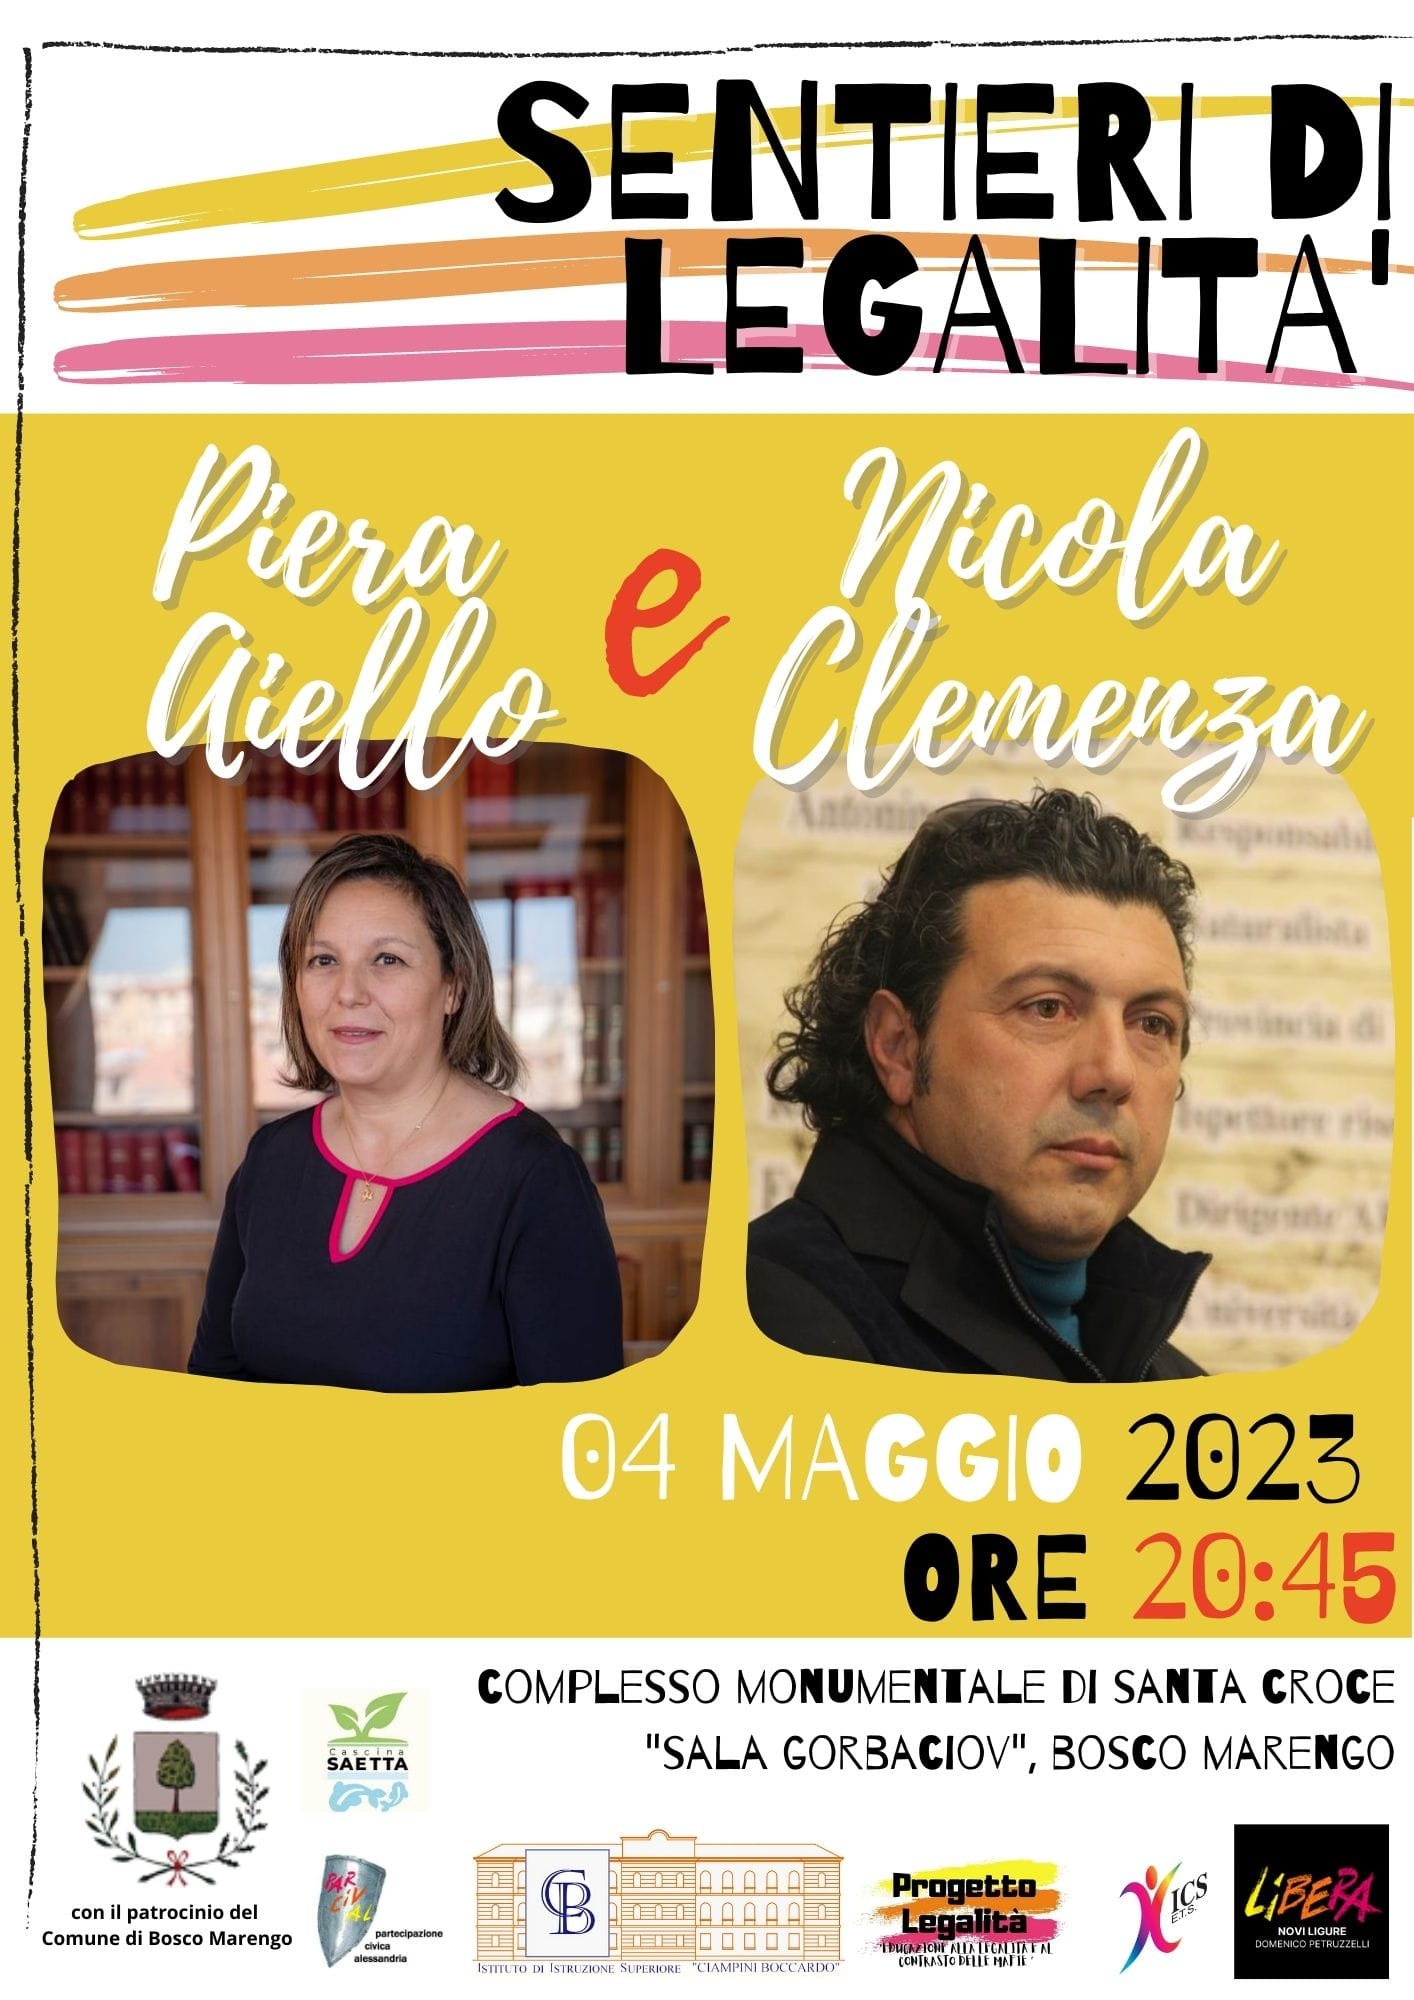 Scuola di Legalità, giovedì 4 Maggio a Bosco Marengo incontro con Piera Aiello e Nicola Clemenza